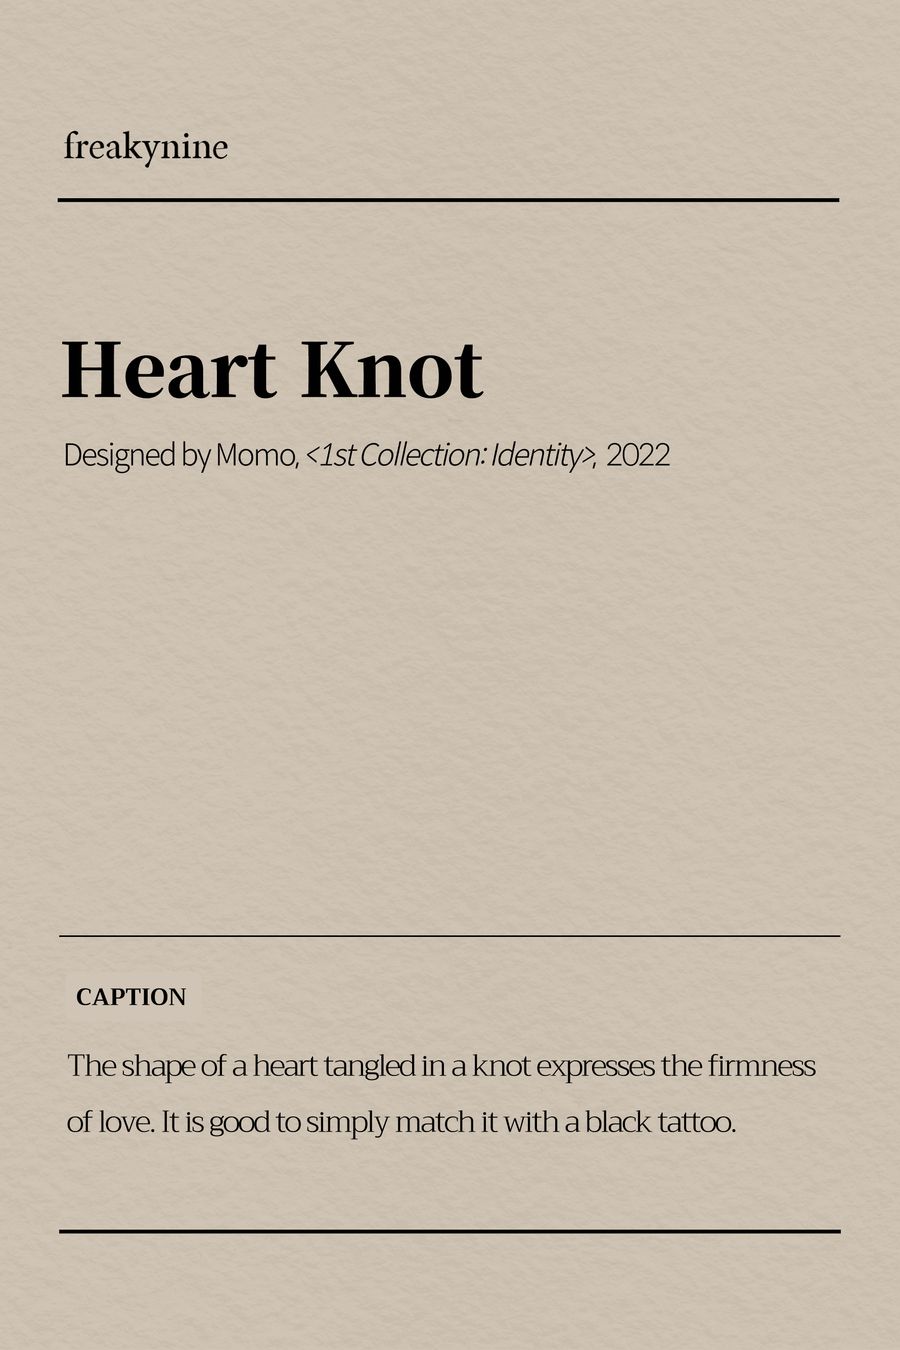 (Momo) Heart Knot (2EA) - freakynine